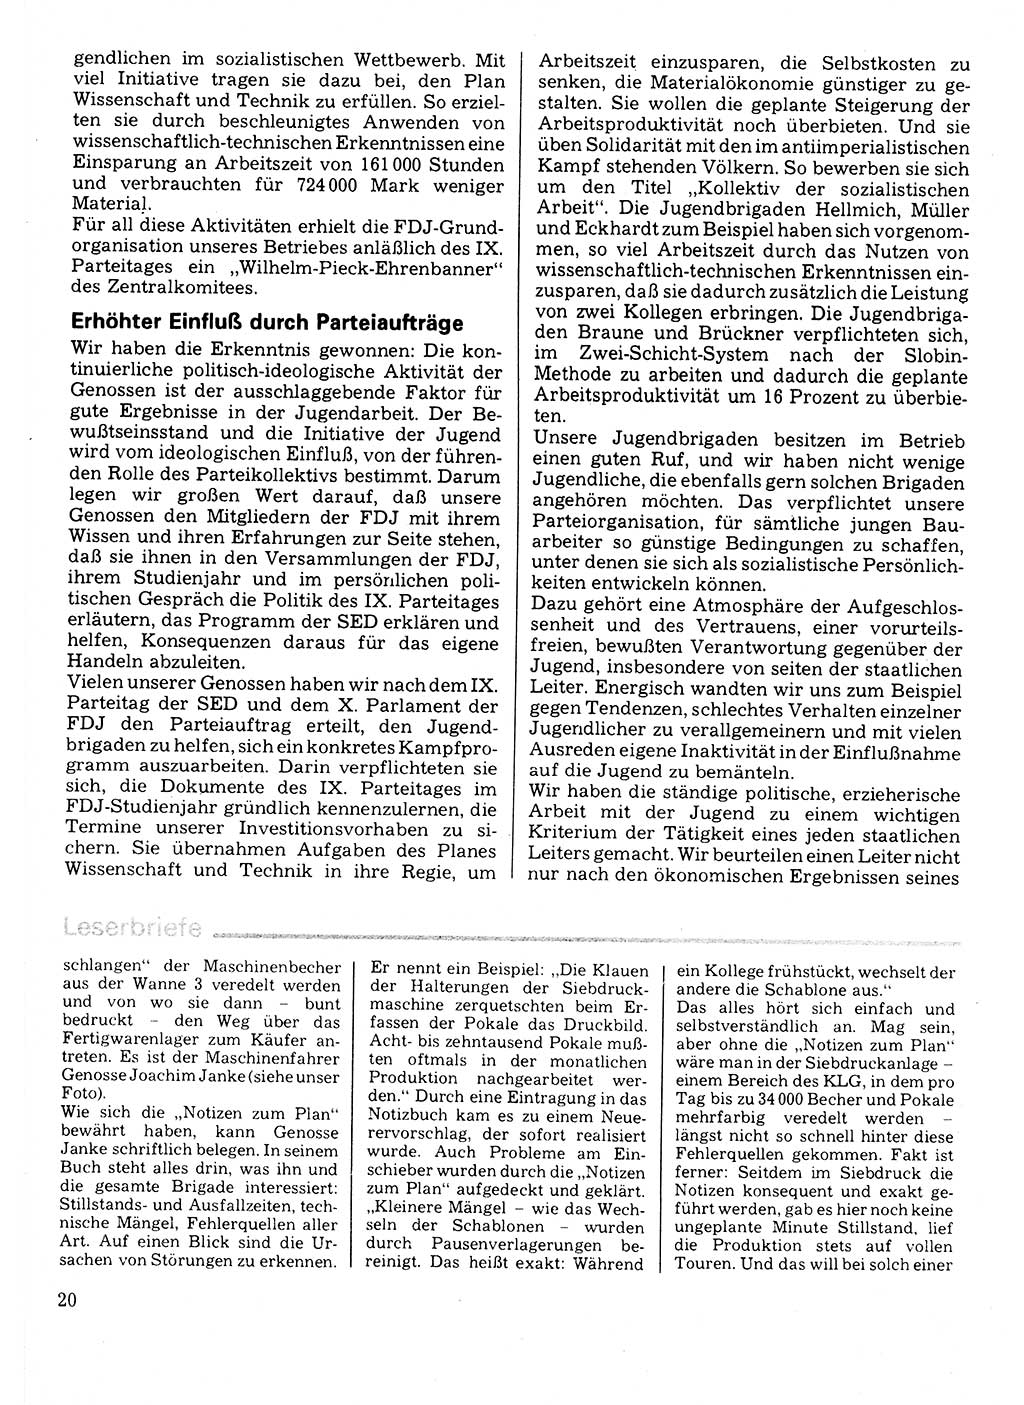 Neuer Weg (NW), Organ des Zentralkomitees (ZK) der SED (Sozialistische Einheitspartei Deutschlands) für Fragen des Parteilebens, 32. Jahrgang [Deutsche Demokratische Republik (DDR)] 1977, Seite 20 (NW ZK SED DDR 1977, S. 20)